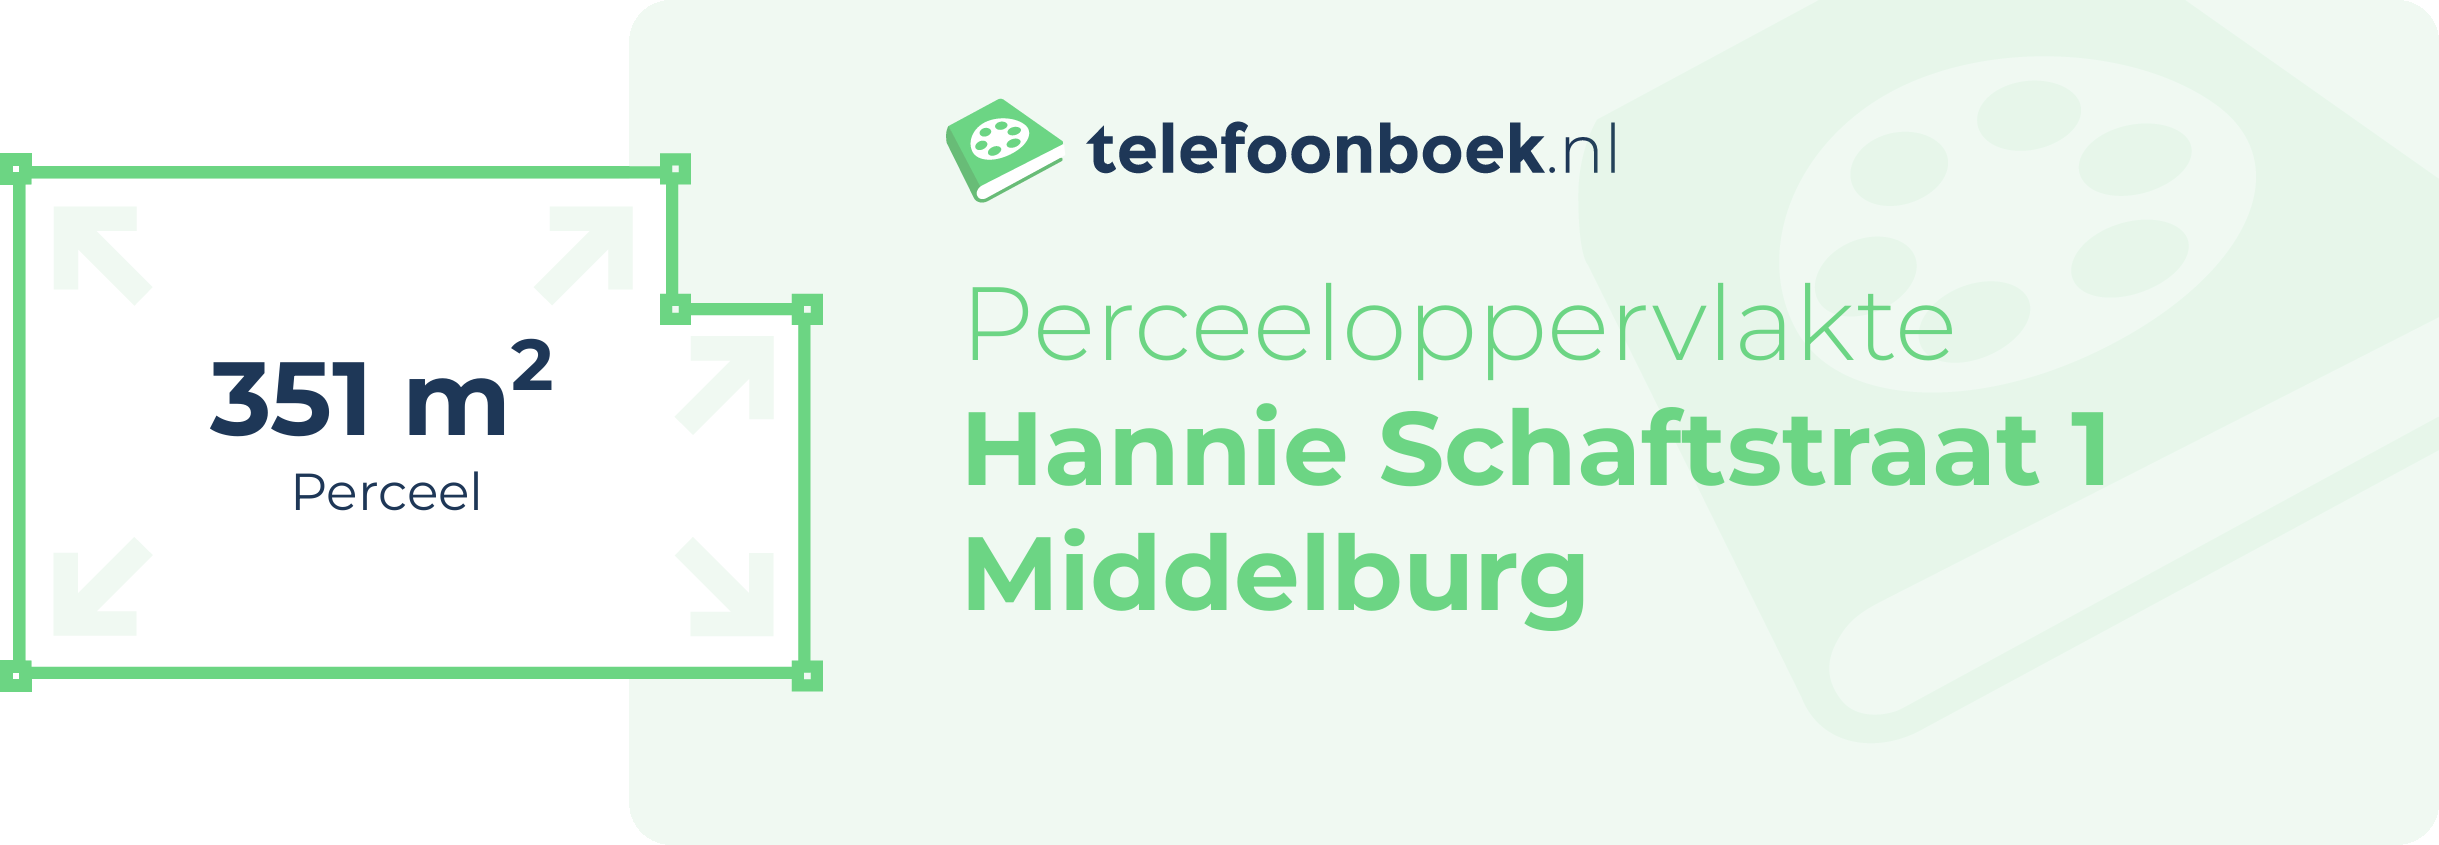 Perceeloppervlakte Hannie Schaftstraat 1 Middelburg